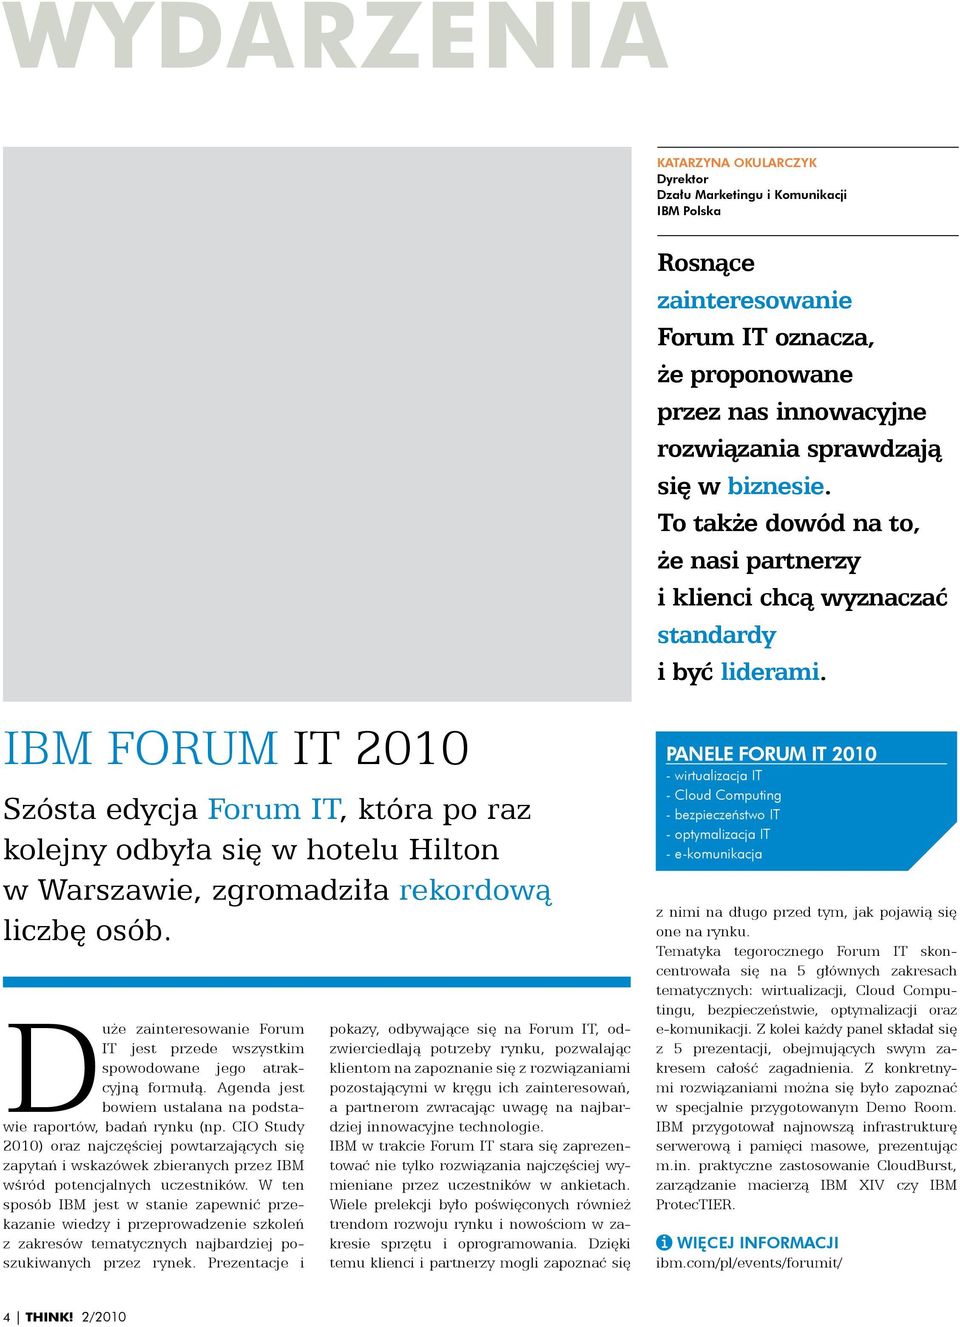 CIO Study 2010) oraz najczęściej powtarzających się zapytań i wskazówek zbieranych przez IBM wśród potencjalnych uczestników.